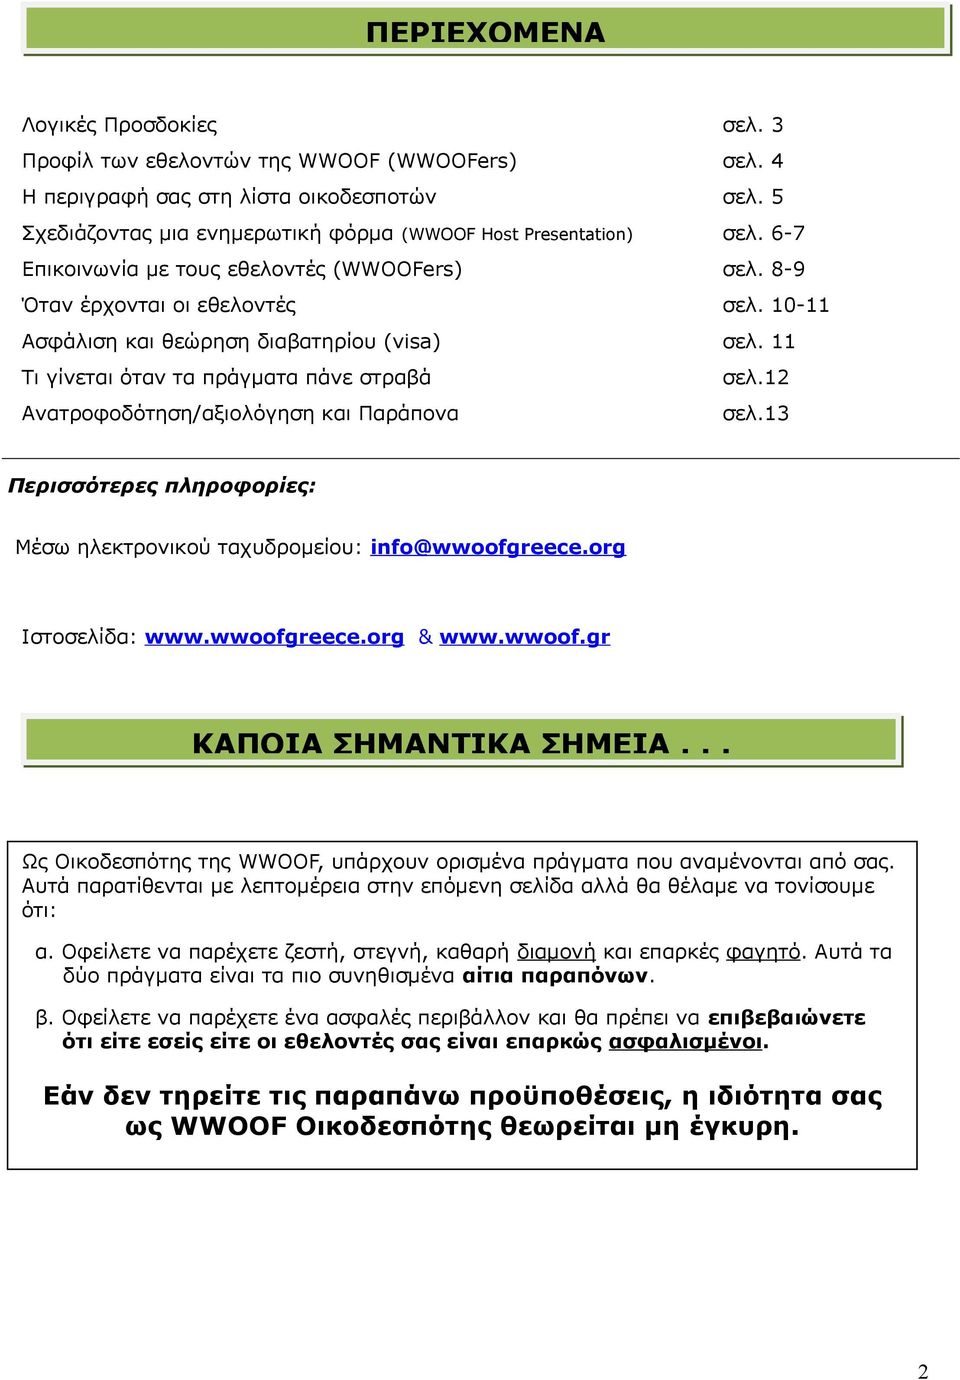 12 Ανατροφοδότηση/αξιολόγηση και Παράπονα σελ.13 Περισσότερες πληροφορίες: Μέσω ηλεκτρονικού ταχυδρομείου: info@wwoofgreece.org Ιστοσελίδα: www.wwoofgreece.org & www.wwoof.gr ΚΑΠΟΙΑ ΣΗΜΑΝΤΙΚΑ ΣΗΜΕΙΑ.